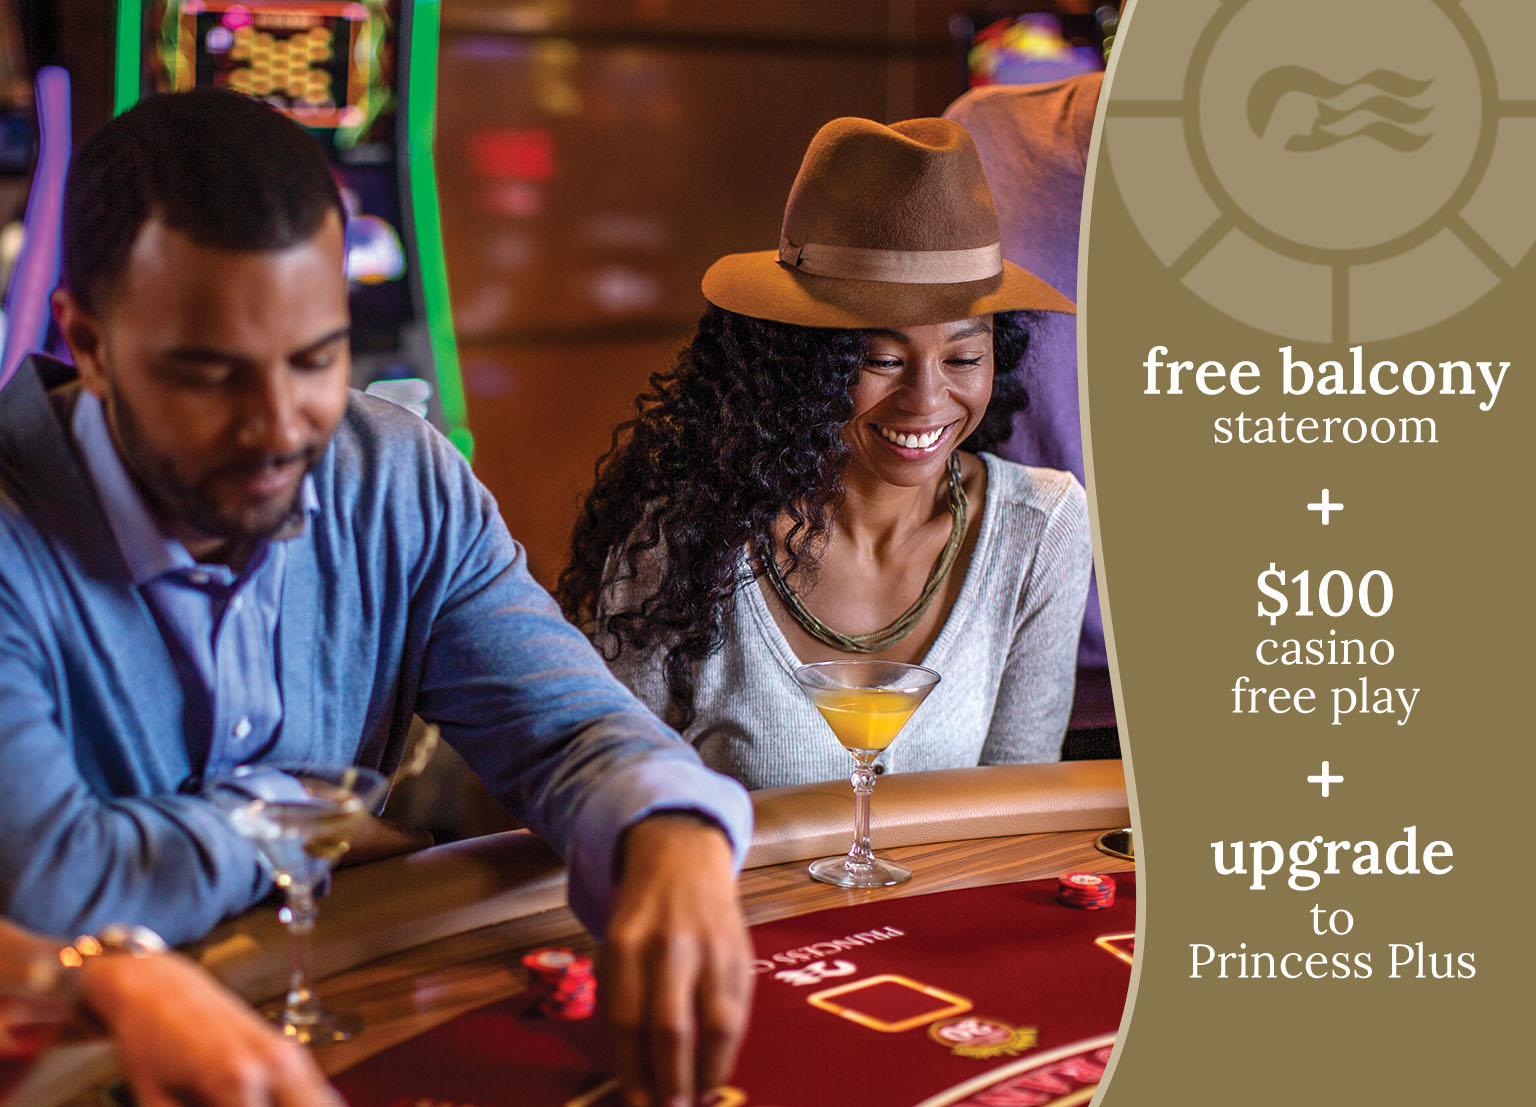 free balcony stateroom + $100 casino free play + upgrade to Princess Plus